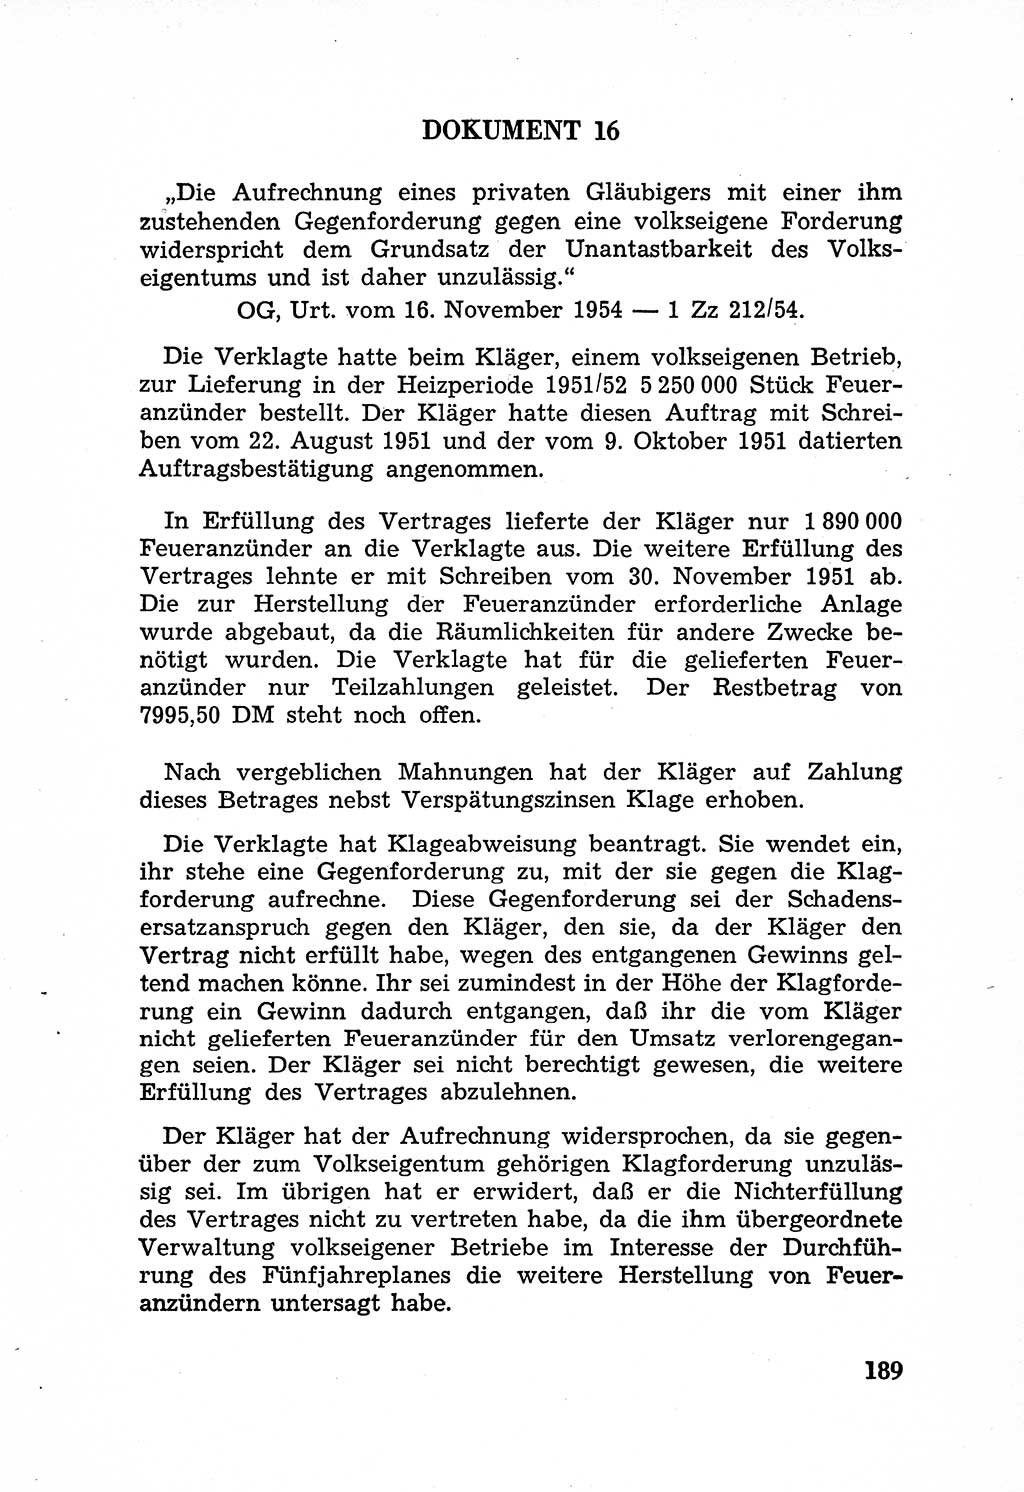 Rechtsstaat in zweierlei Hinsicht, Untersuchungsausschuß freiheitlicher Juristen (UfJ) [Bundesrepublik Deutschland (BRD)] 1956, Seite 189 (R.-St. UfJ BRD 1956, S. 189)